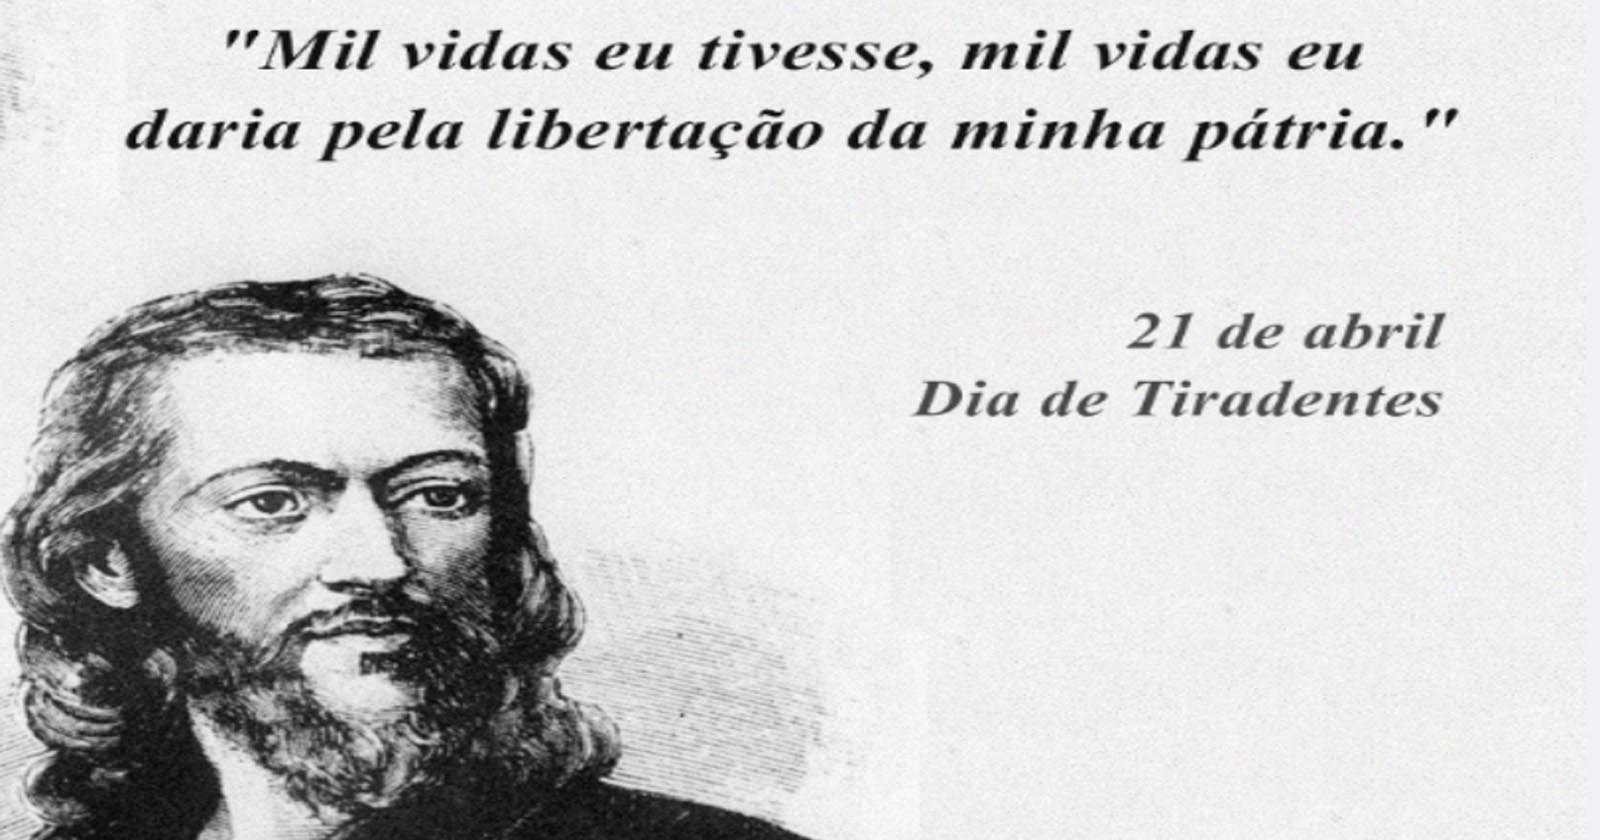 Frases de Tiradentes – Homenagem ao Mártir da Inconfidência Mineira e Sua Importância para o Brasil